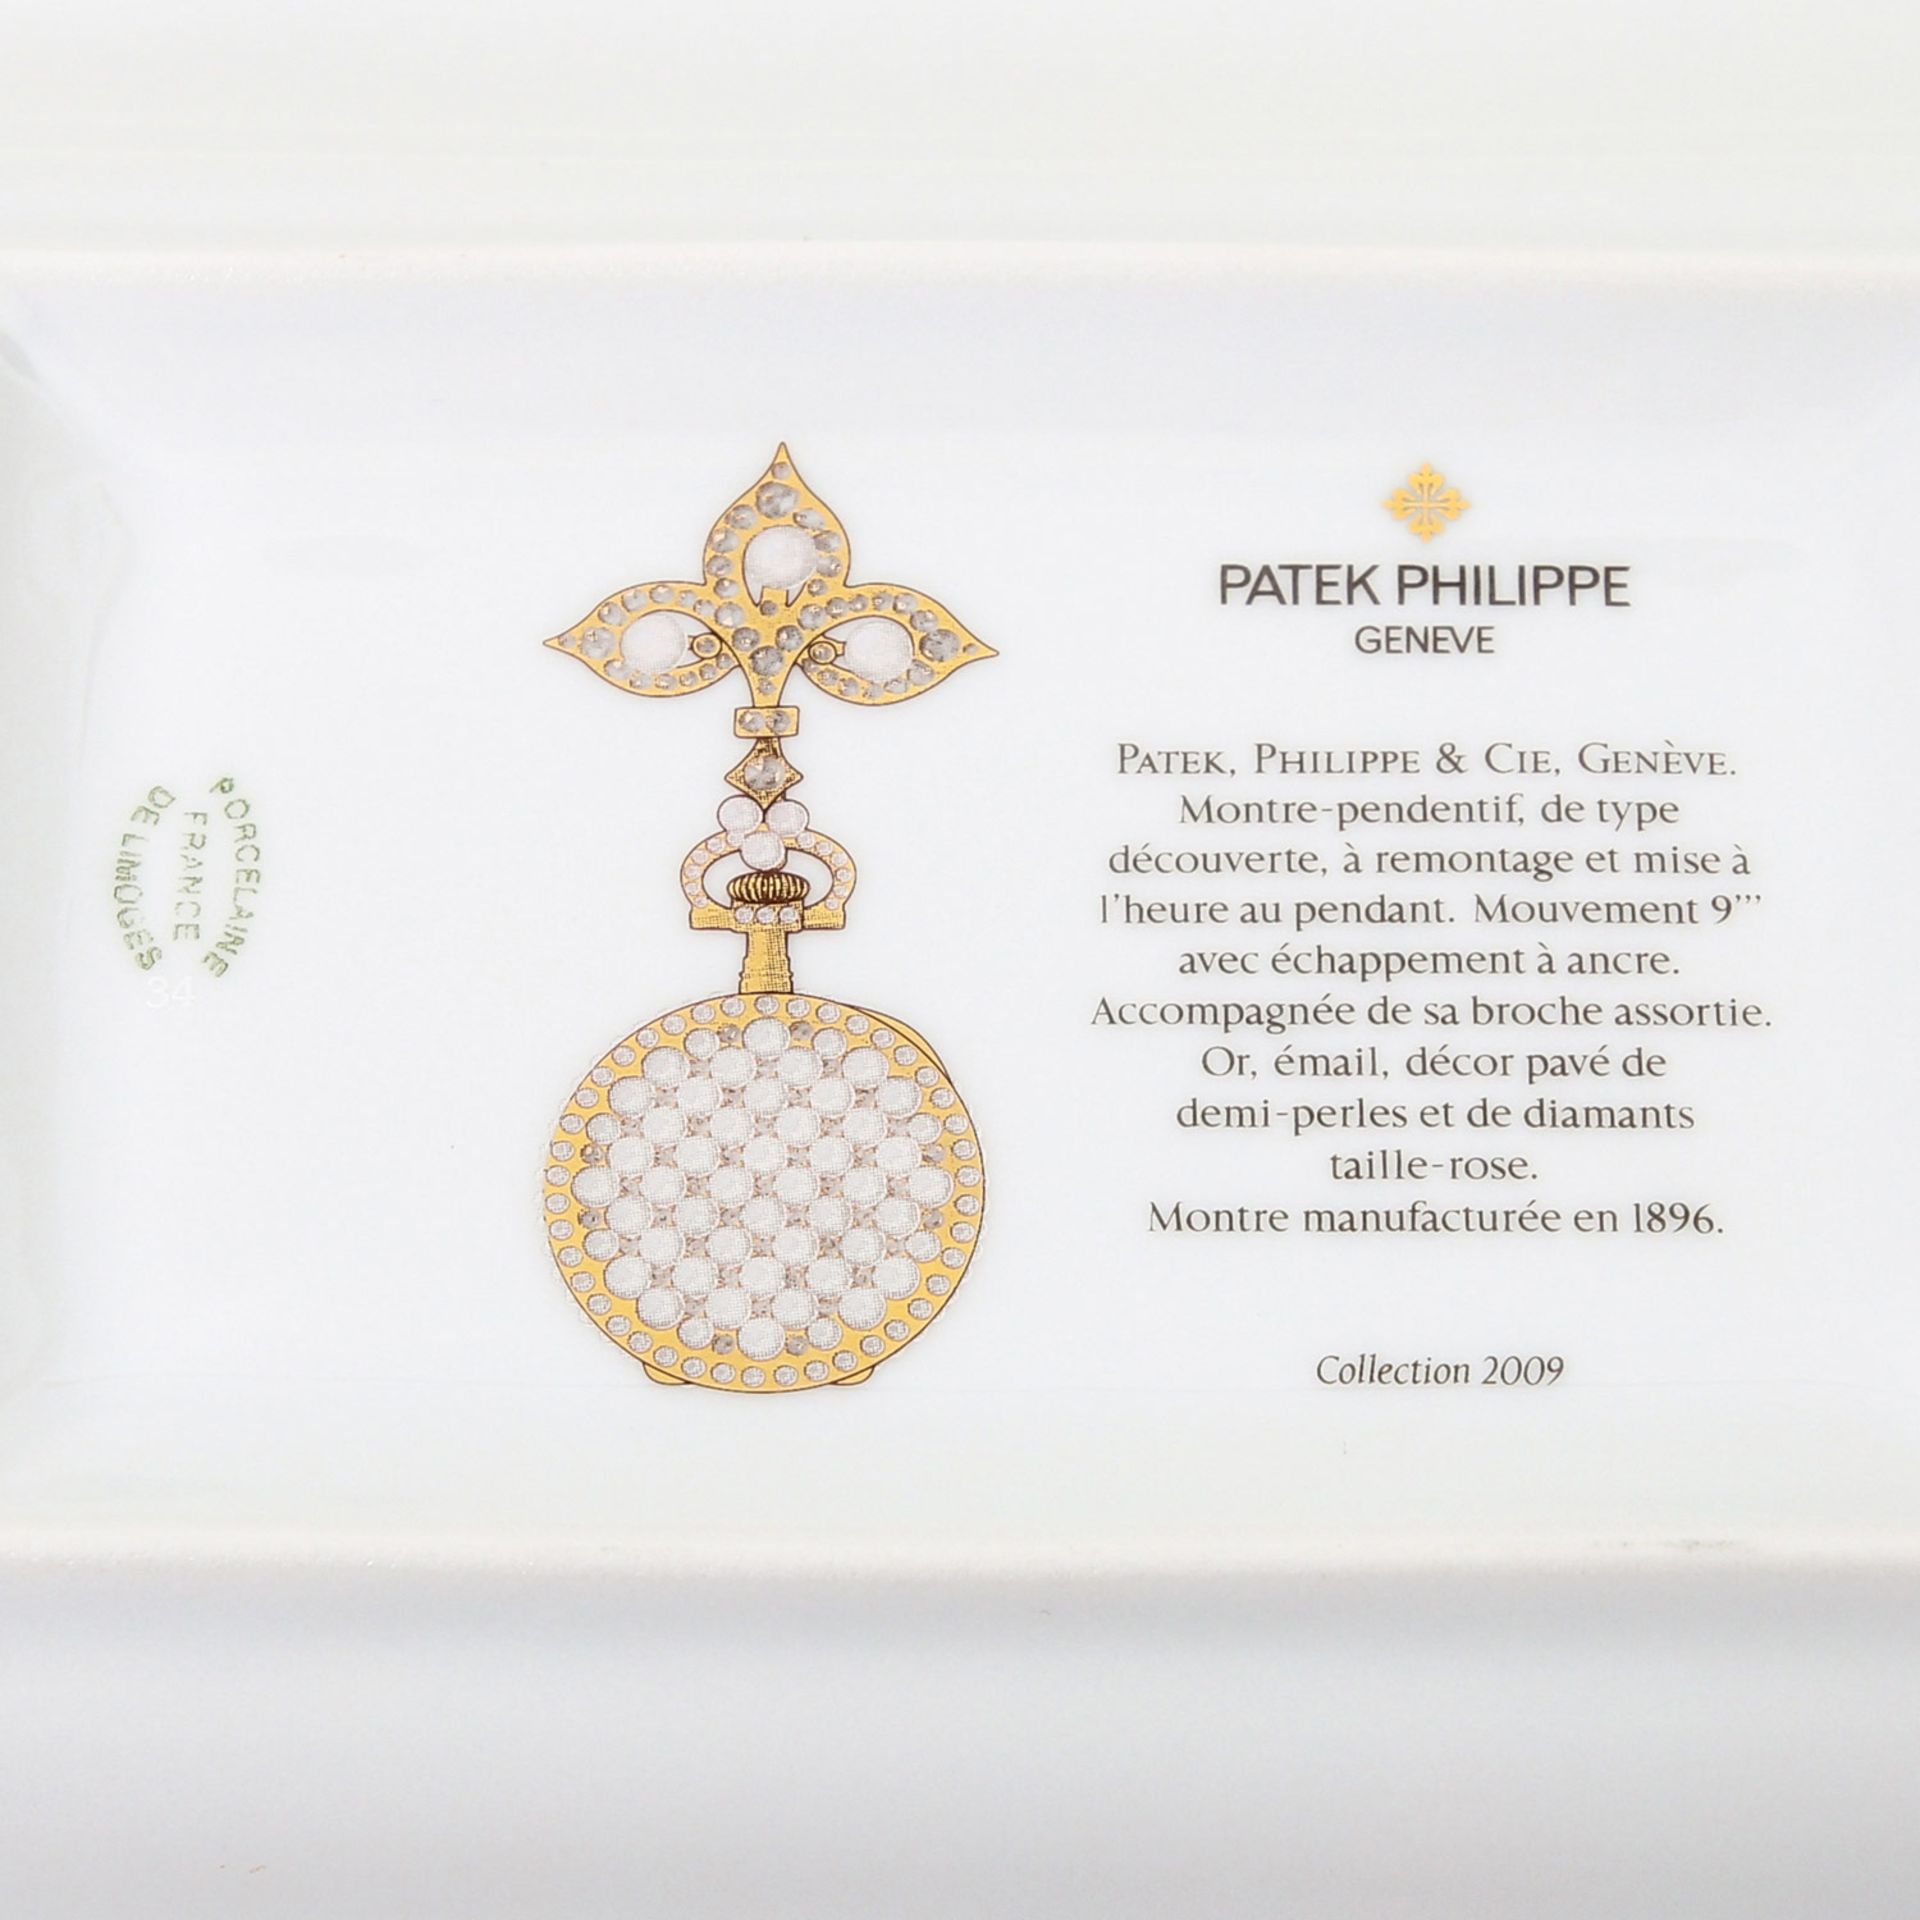 PATEK PHILIPPE Schale, Collection 2009. LIMOGES, Weißporzellan mit einem Dekor von Perlen, - Image 5 of 5